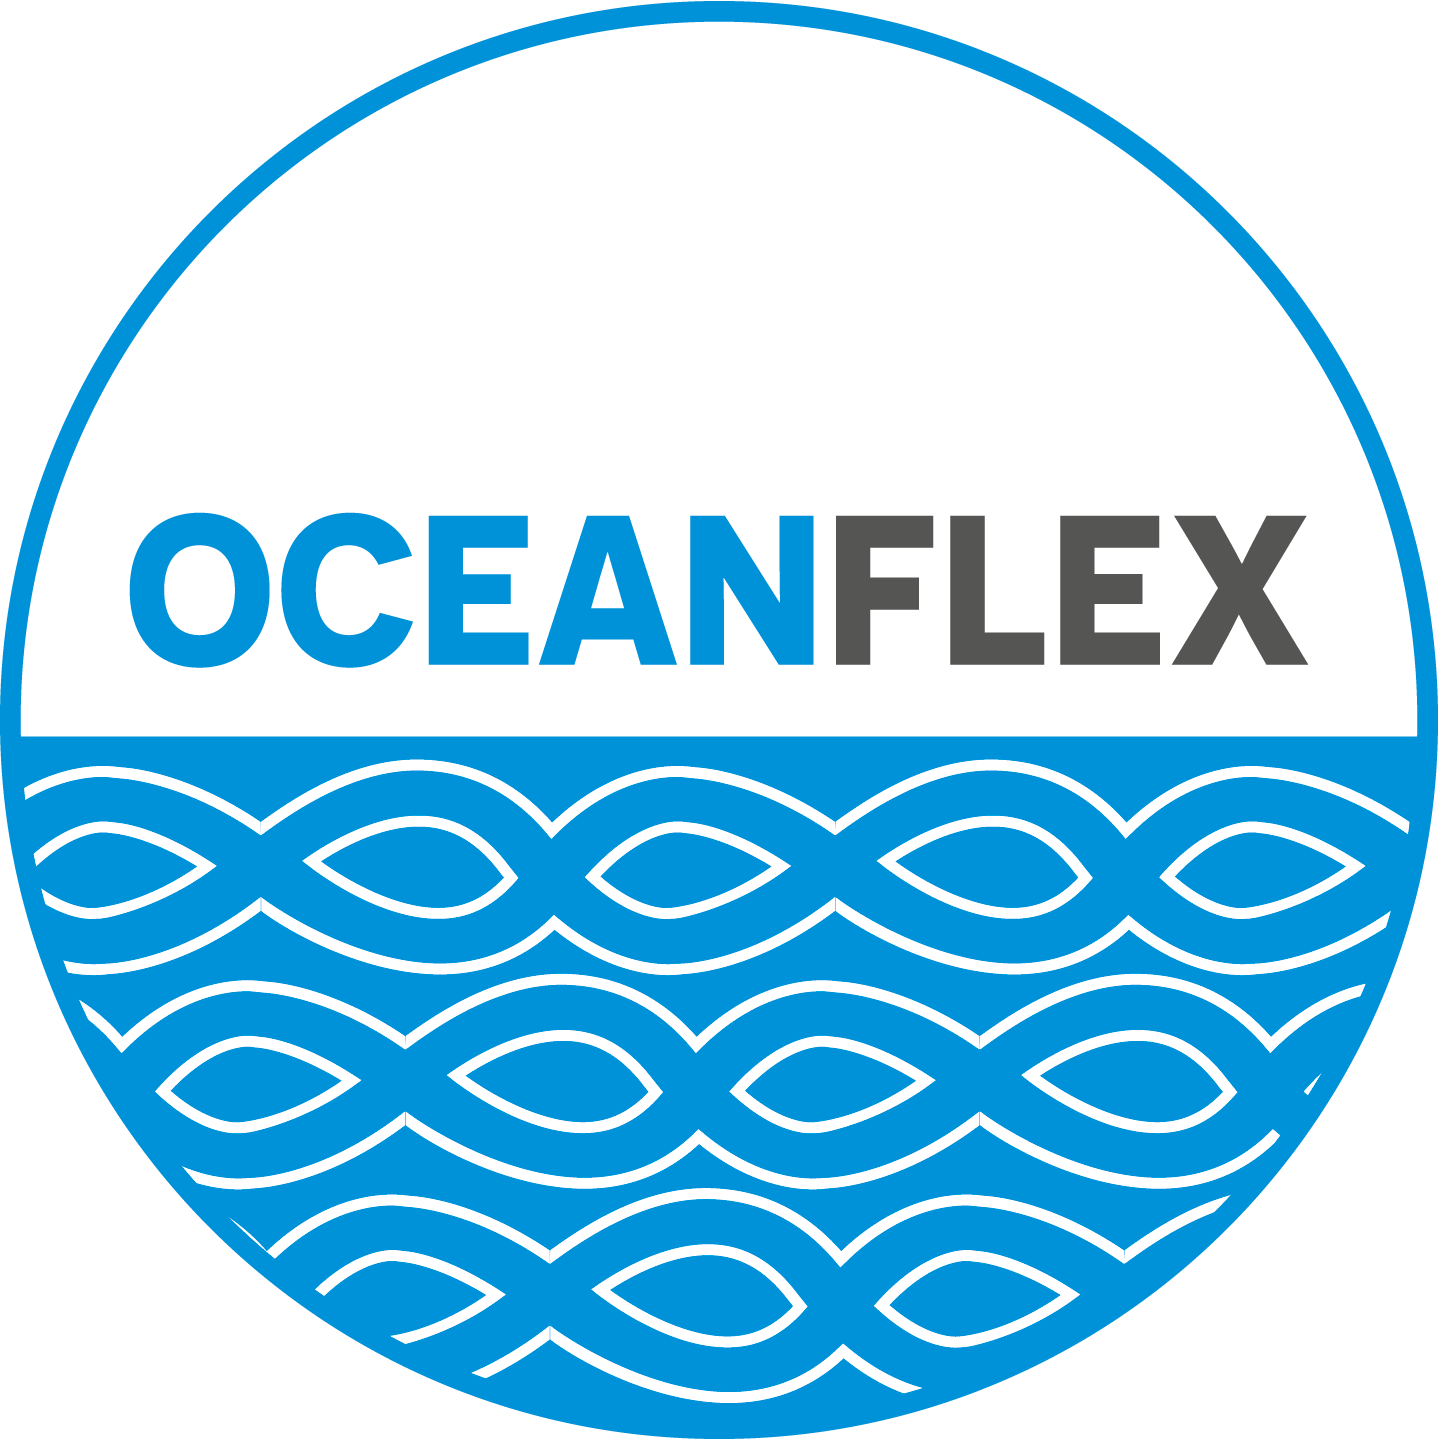 OceanFlex Marine Cables